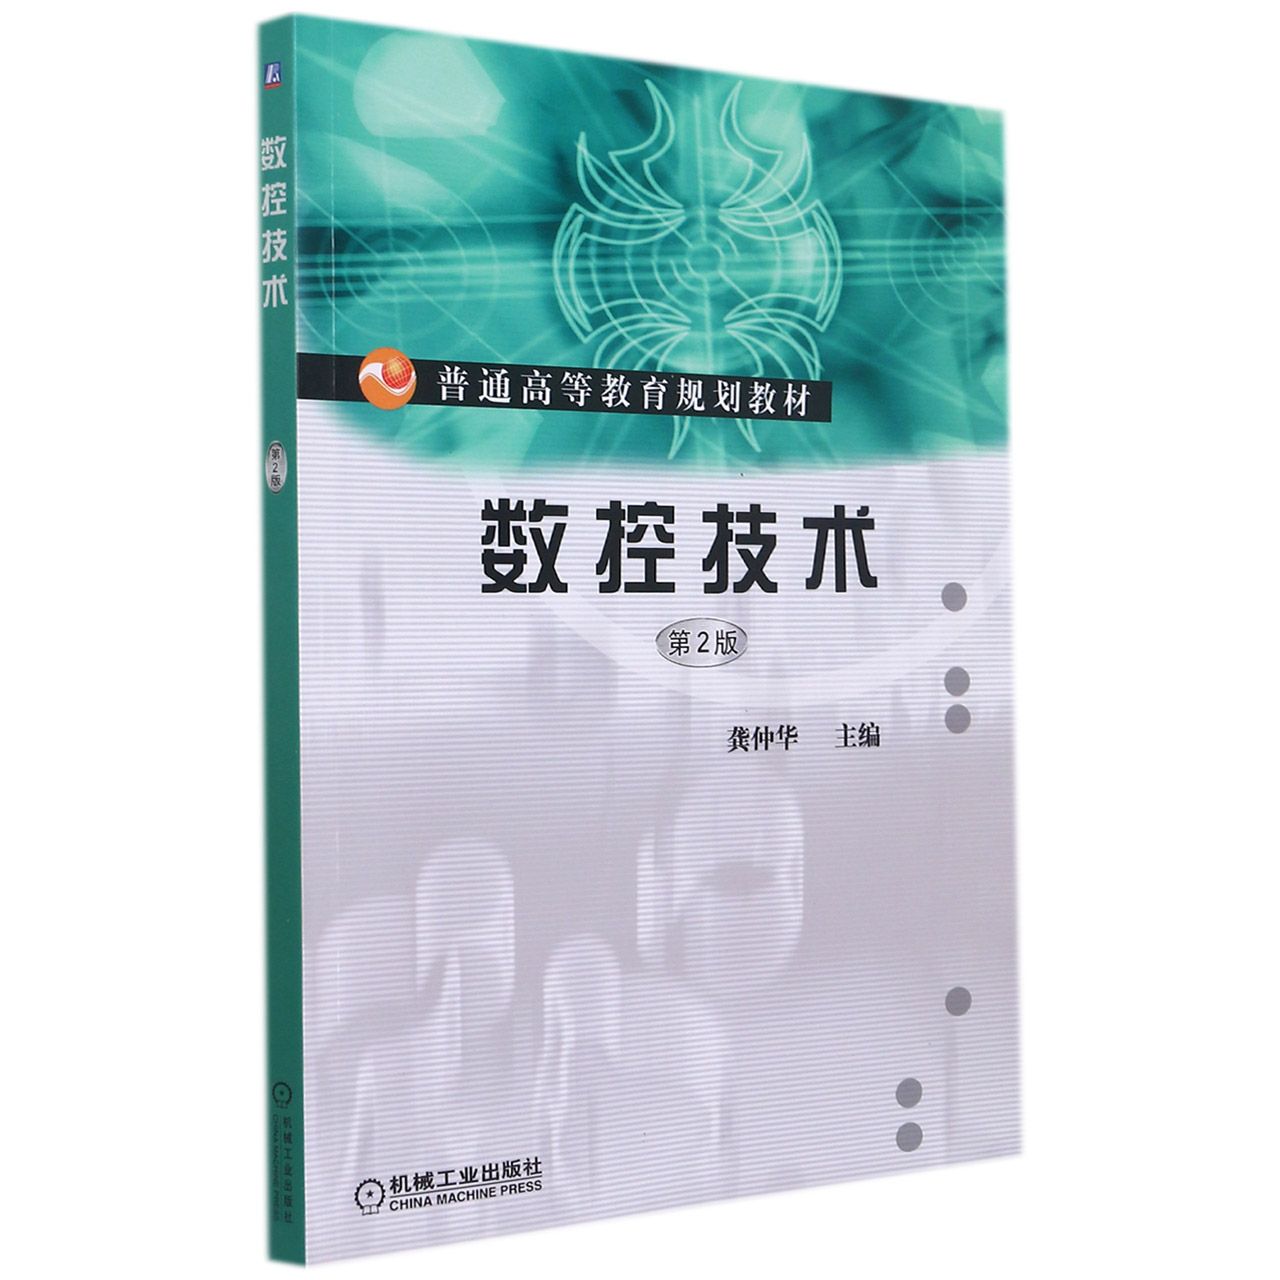 现货 数控技术(第2版普通高等教育规划教材) 机械工业出版社BK